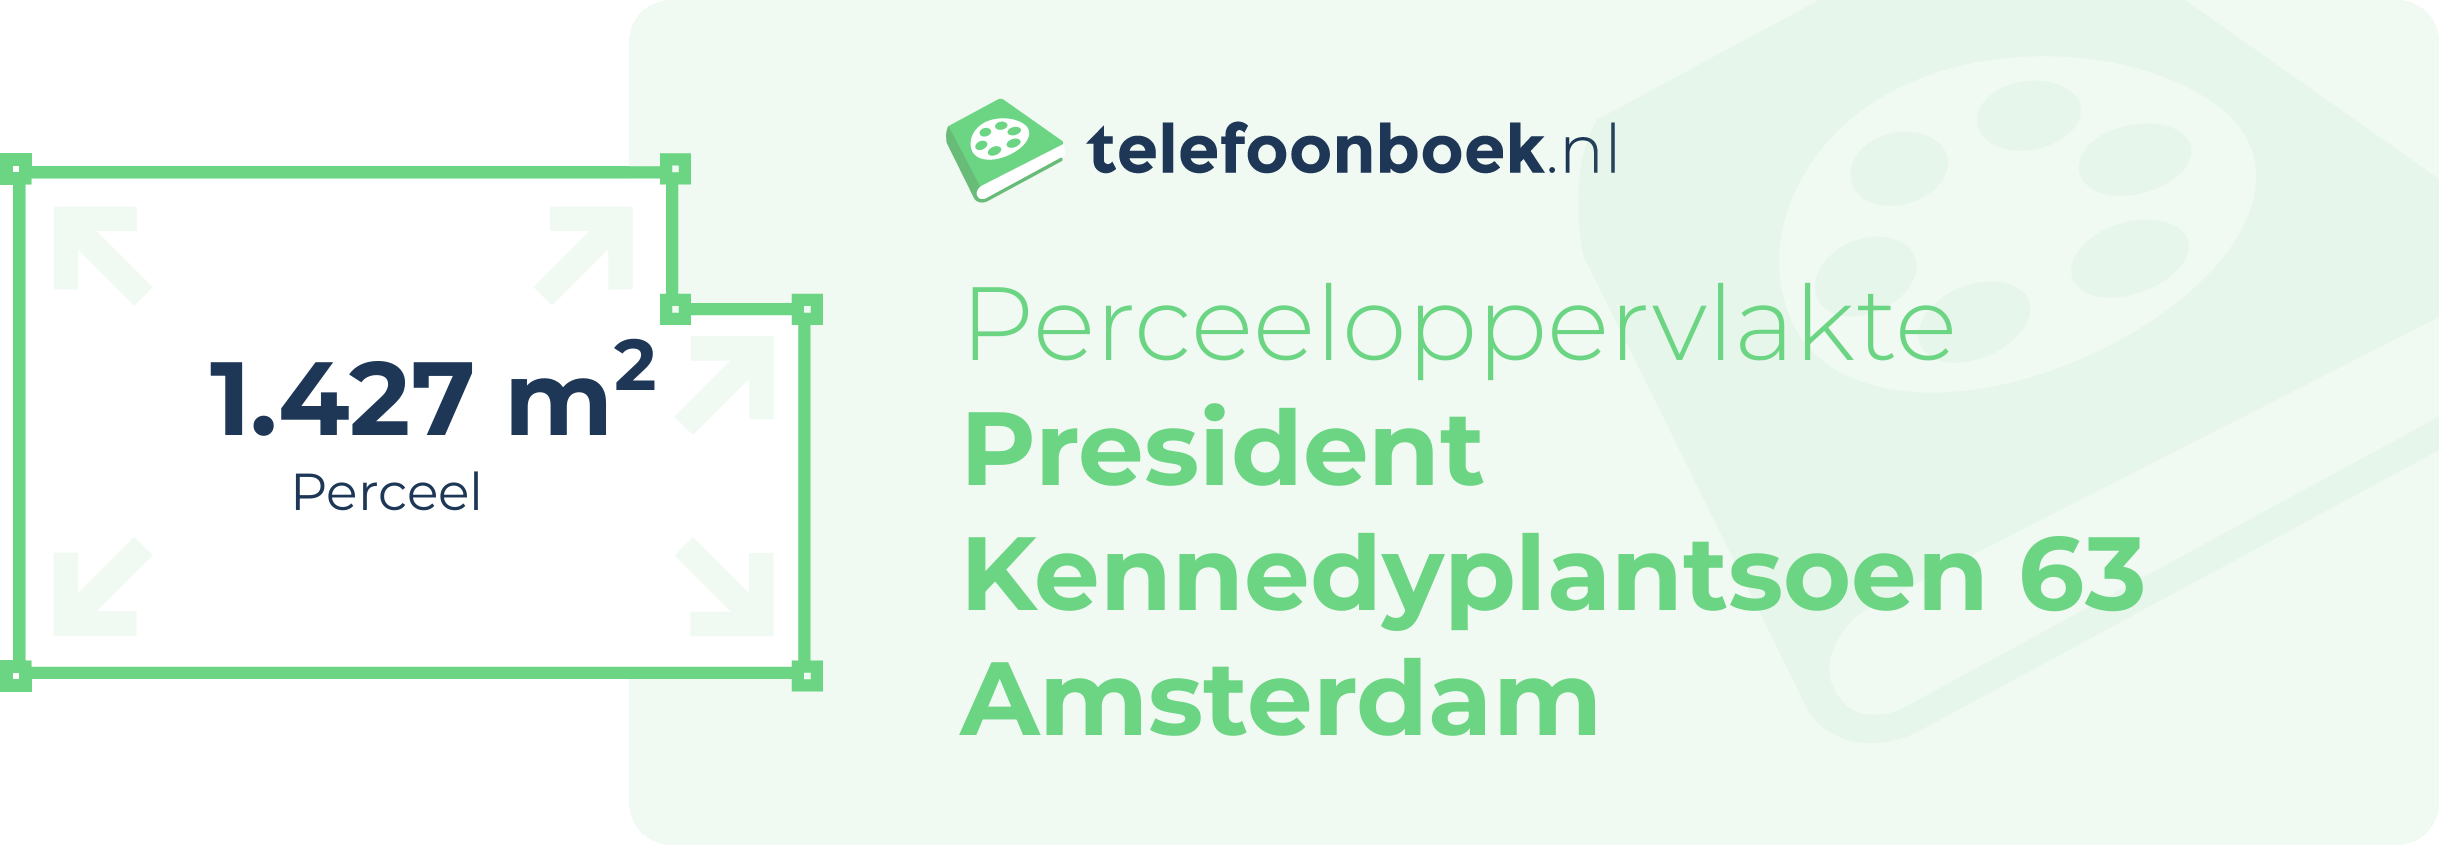 Perceeloppervlakte President Kennedyplantsoen 63 Amsterdam